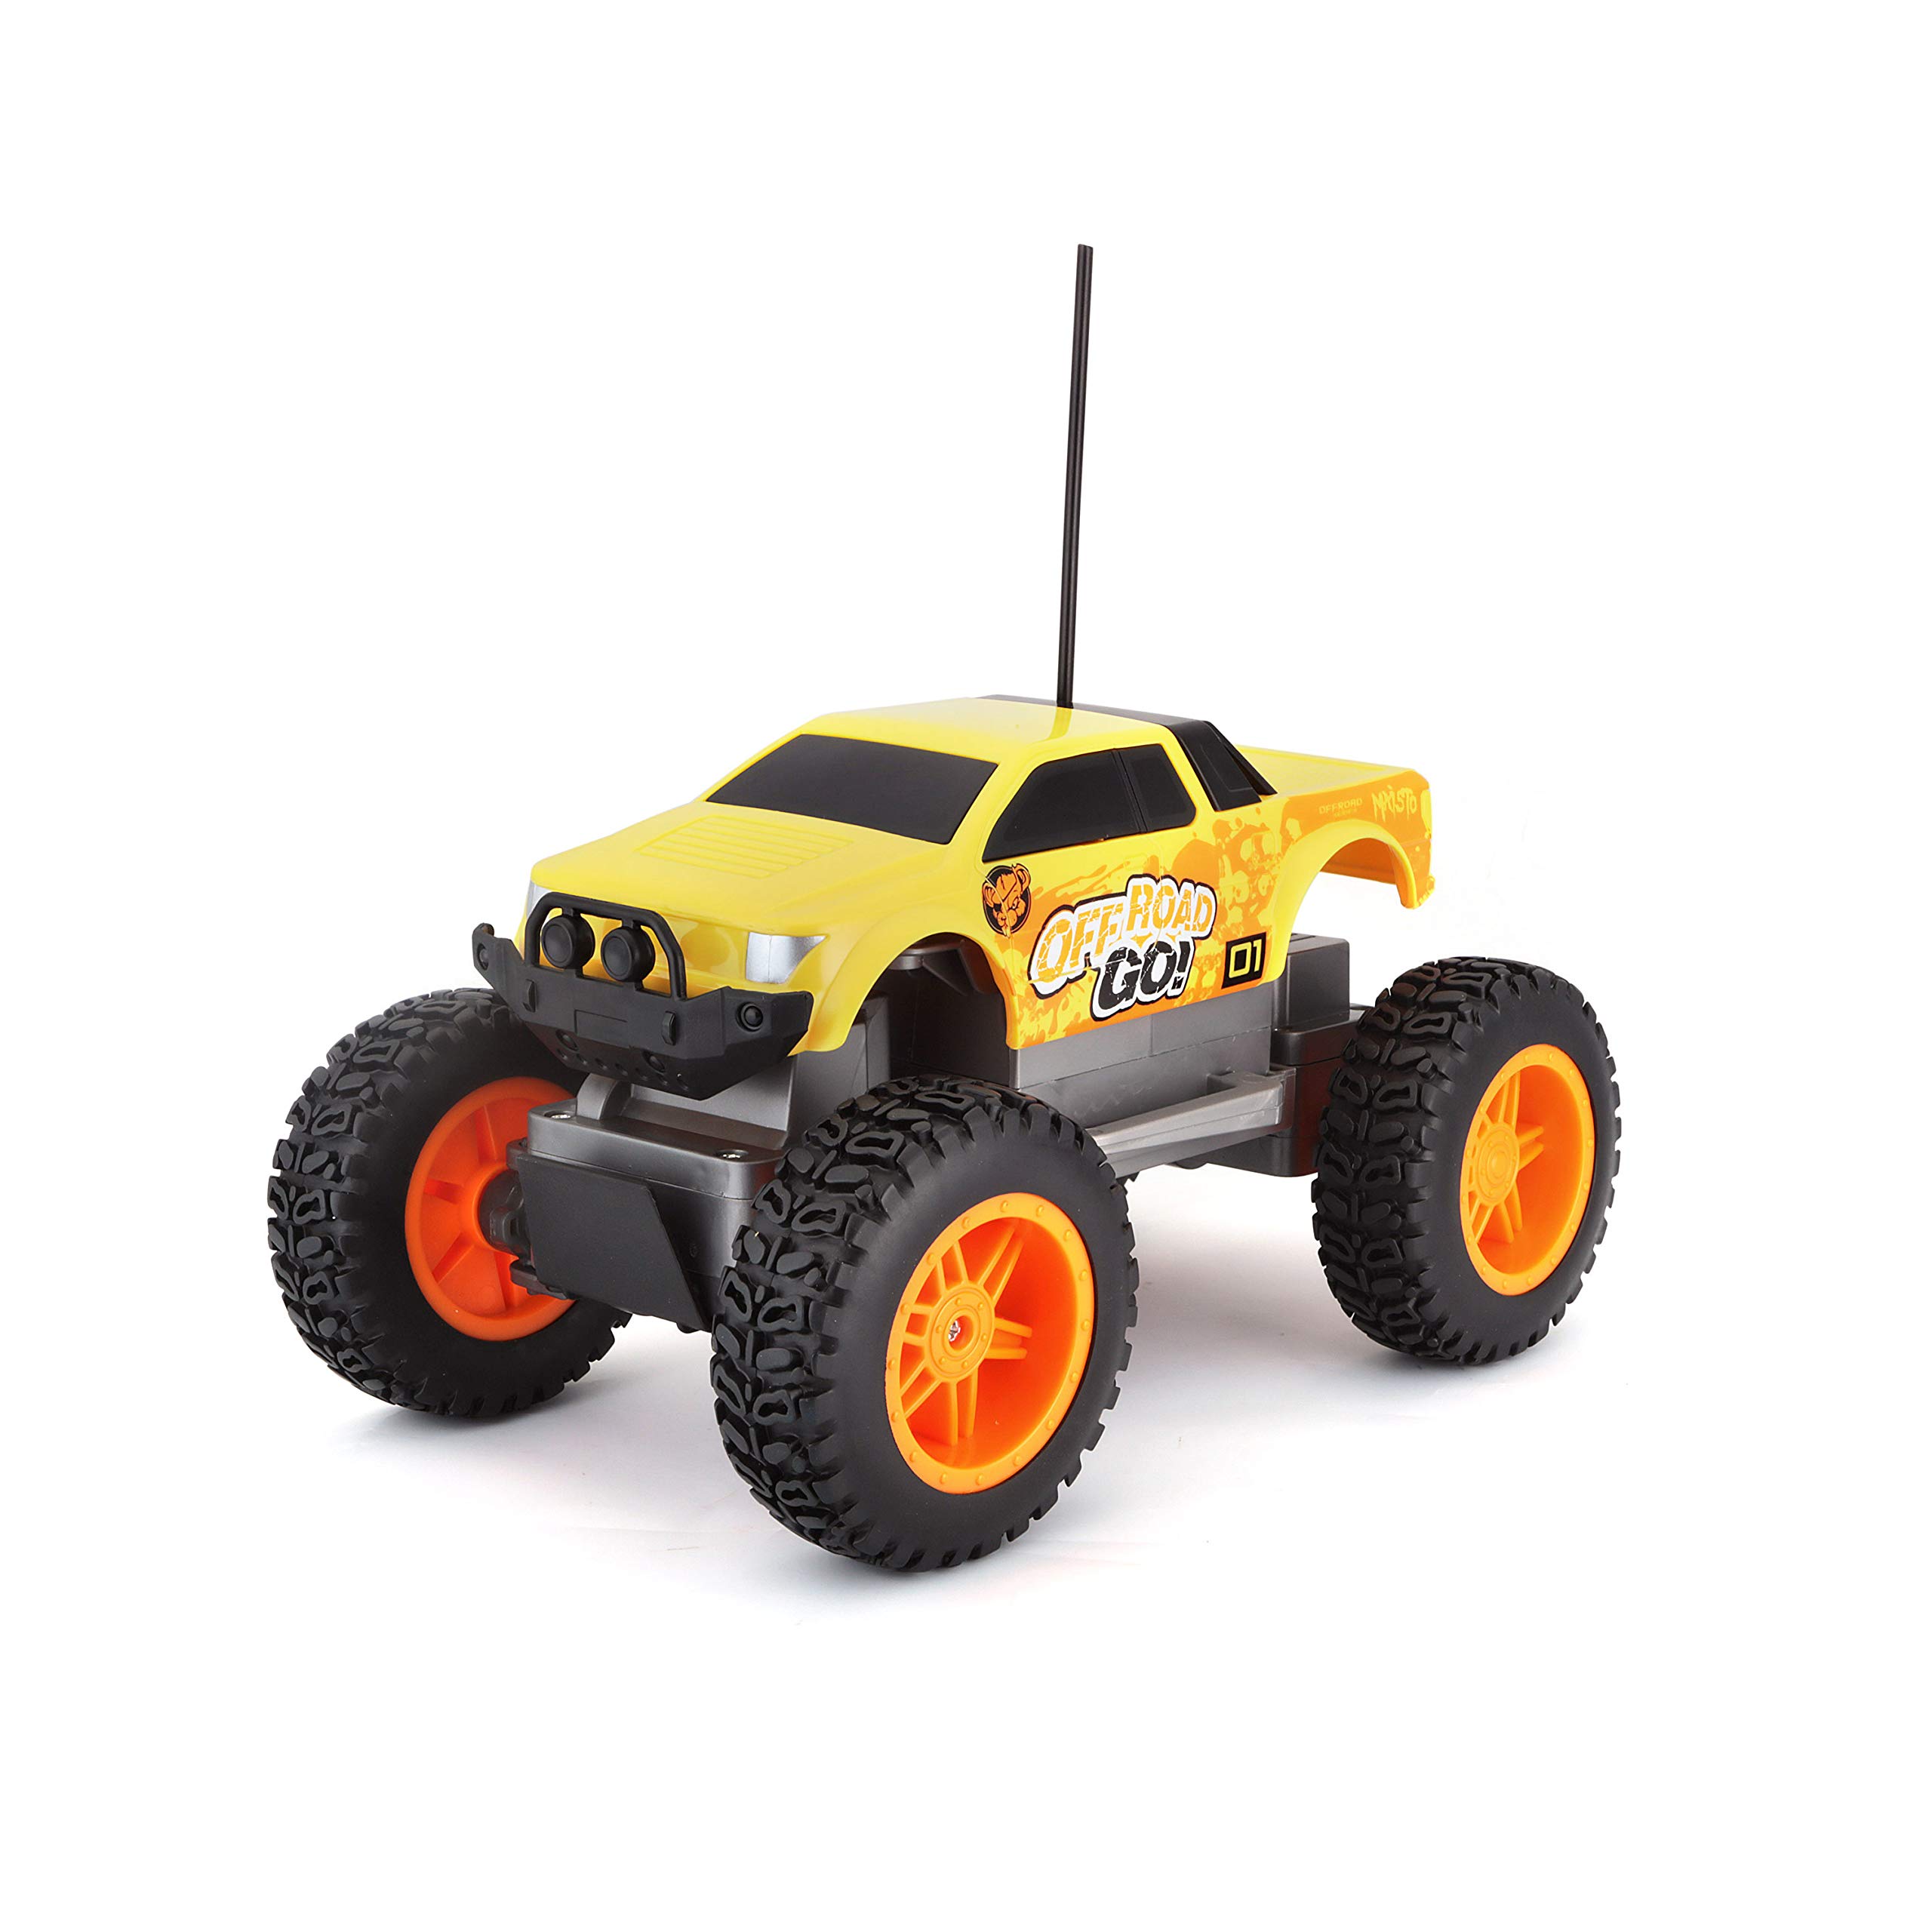 Maisto Tech R/C Off Road Go RTR: Ferngesteuertes Auto in Monstertruck-Ausführung, ab 5 Jahren, mit Fernbedienung und Batterien, 21 cm, gelb-orange (581762)